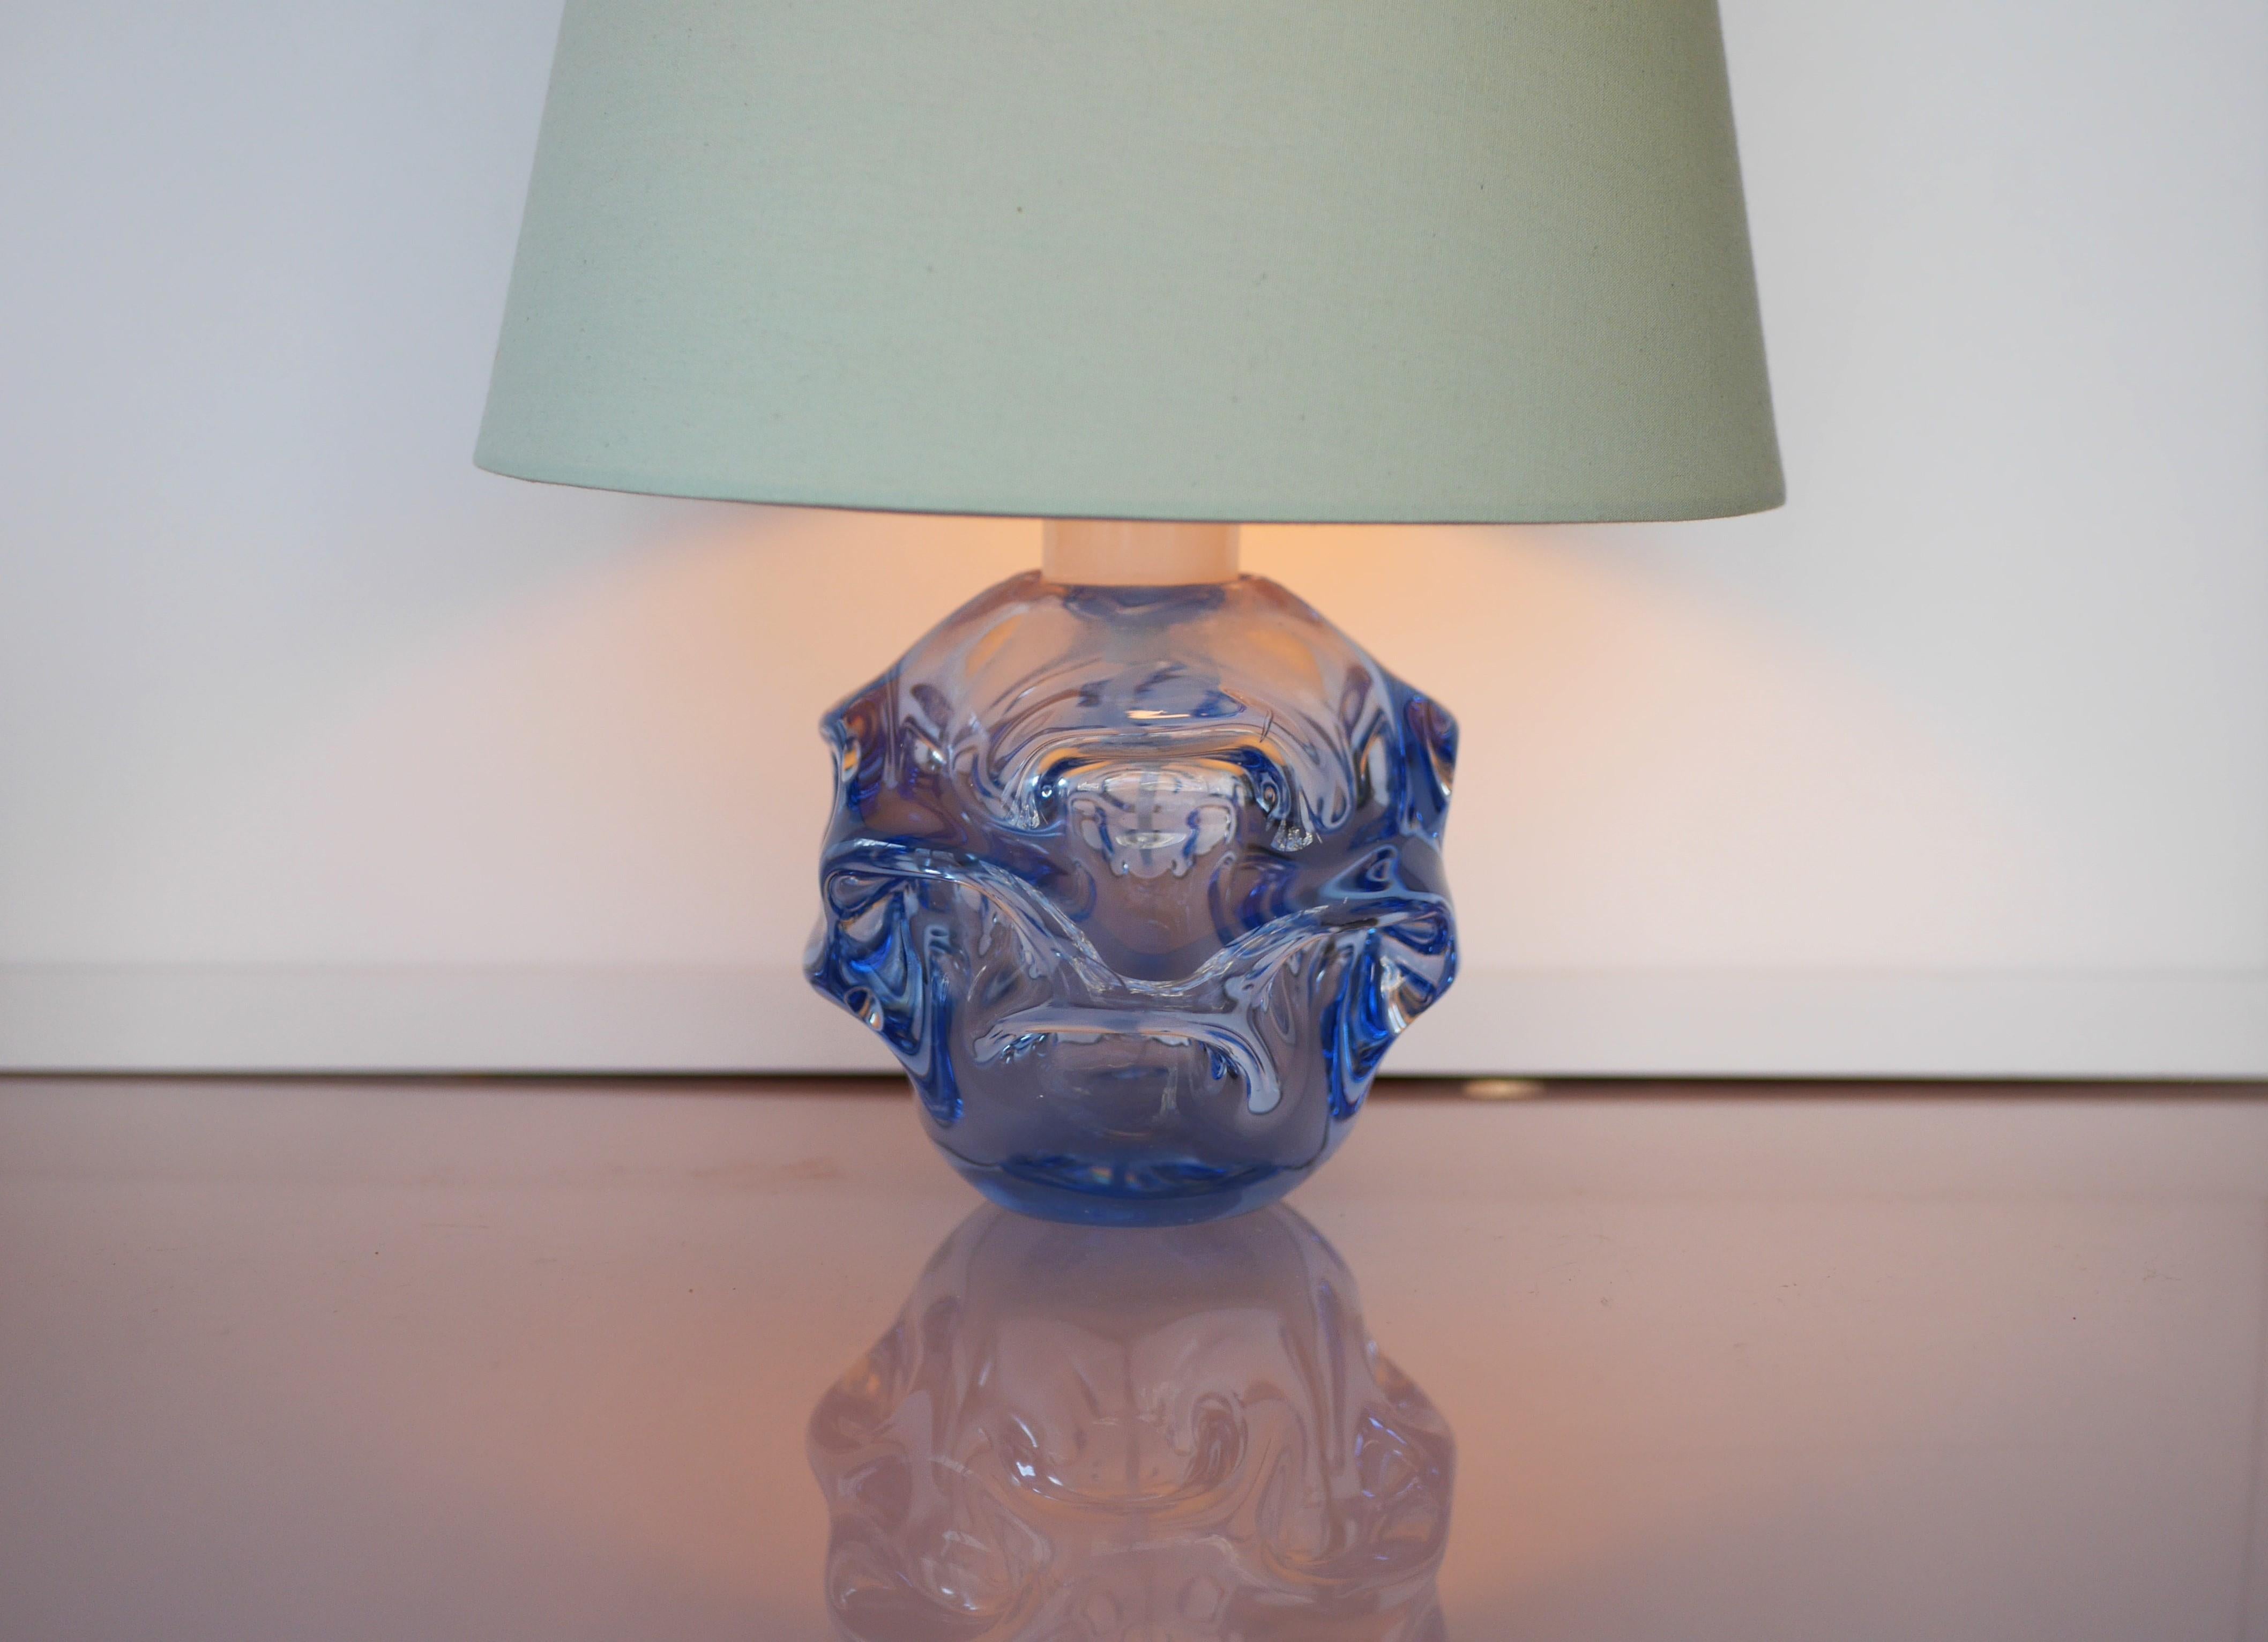 Une superbe lampe en cristal moderne du milieu du siècle, fabriquée par le talentueux Börne Augustsson pour Åseda, en Suède, dans les années 60. La forme est très biomorphique et la couleur est un ton bleu tout aussi étonnant. Cette lampe est très